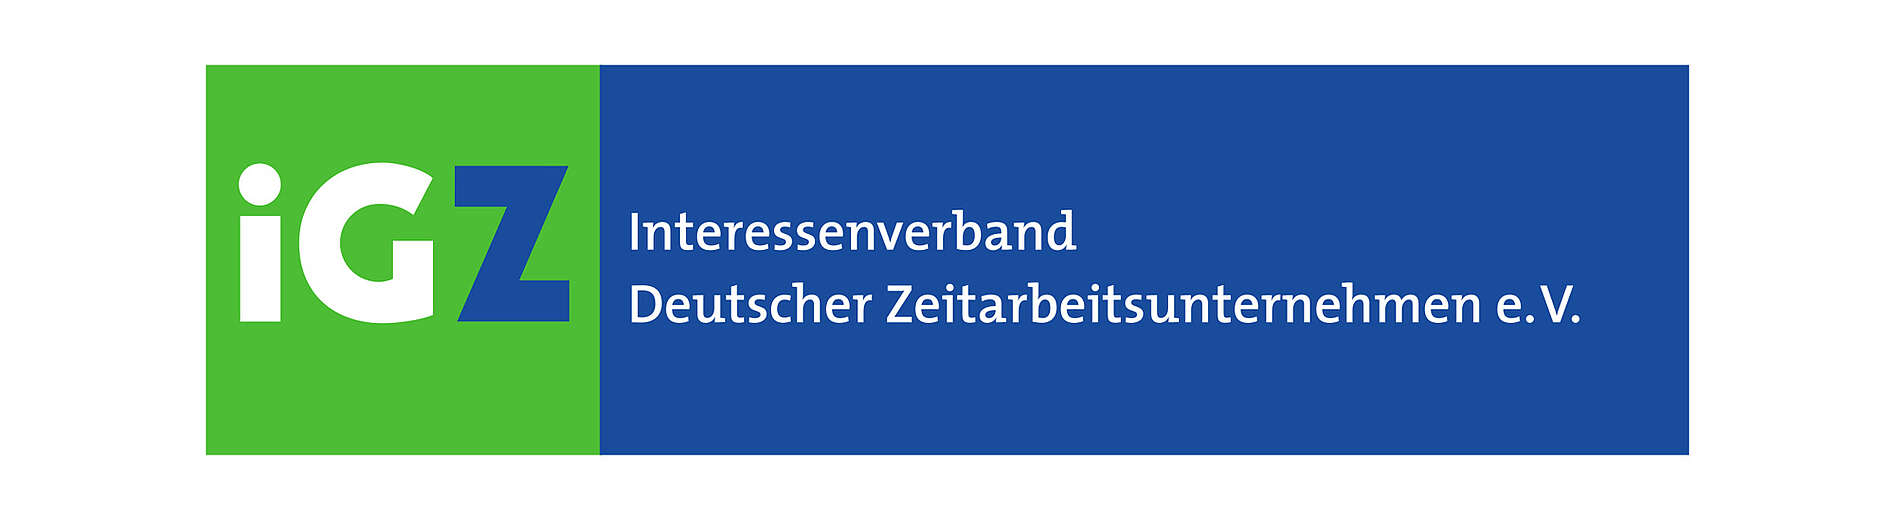 LEITDESK ist Mitglied im Interessenverband Deutscher Zeitarbeitsunternehmen e.V.